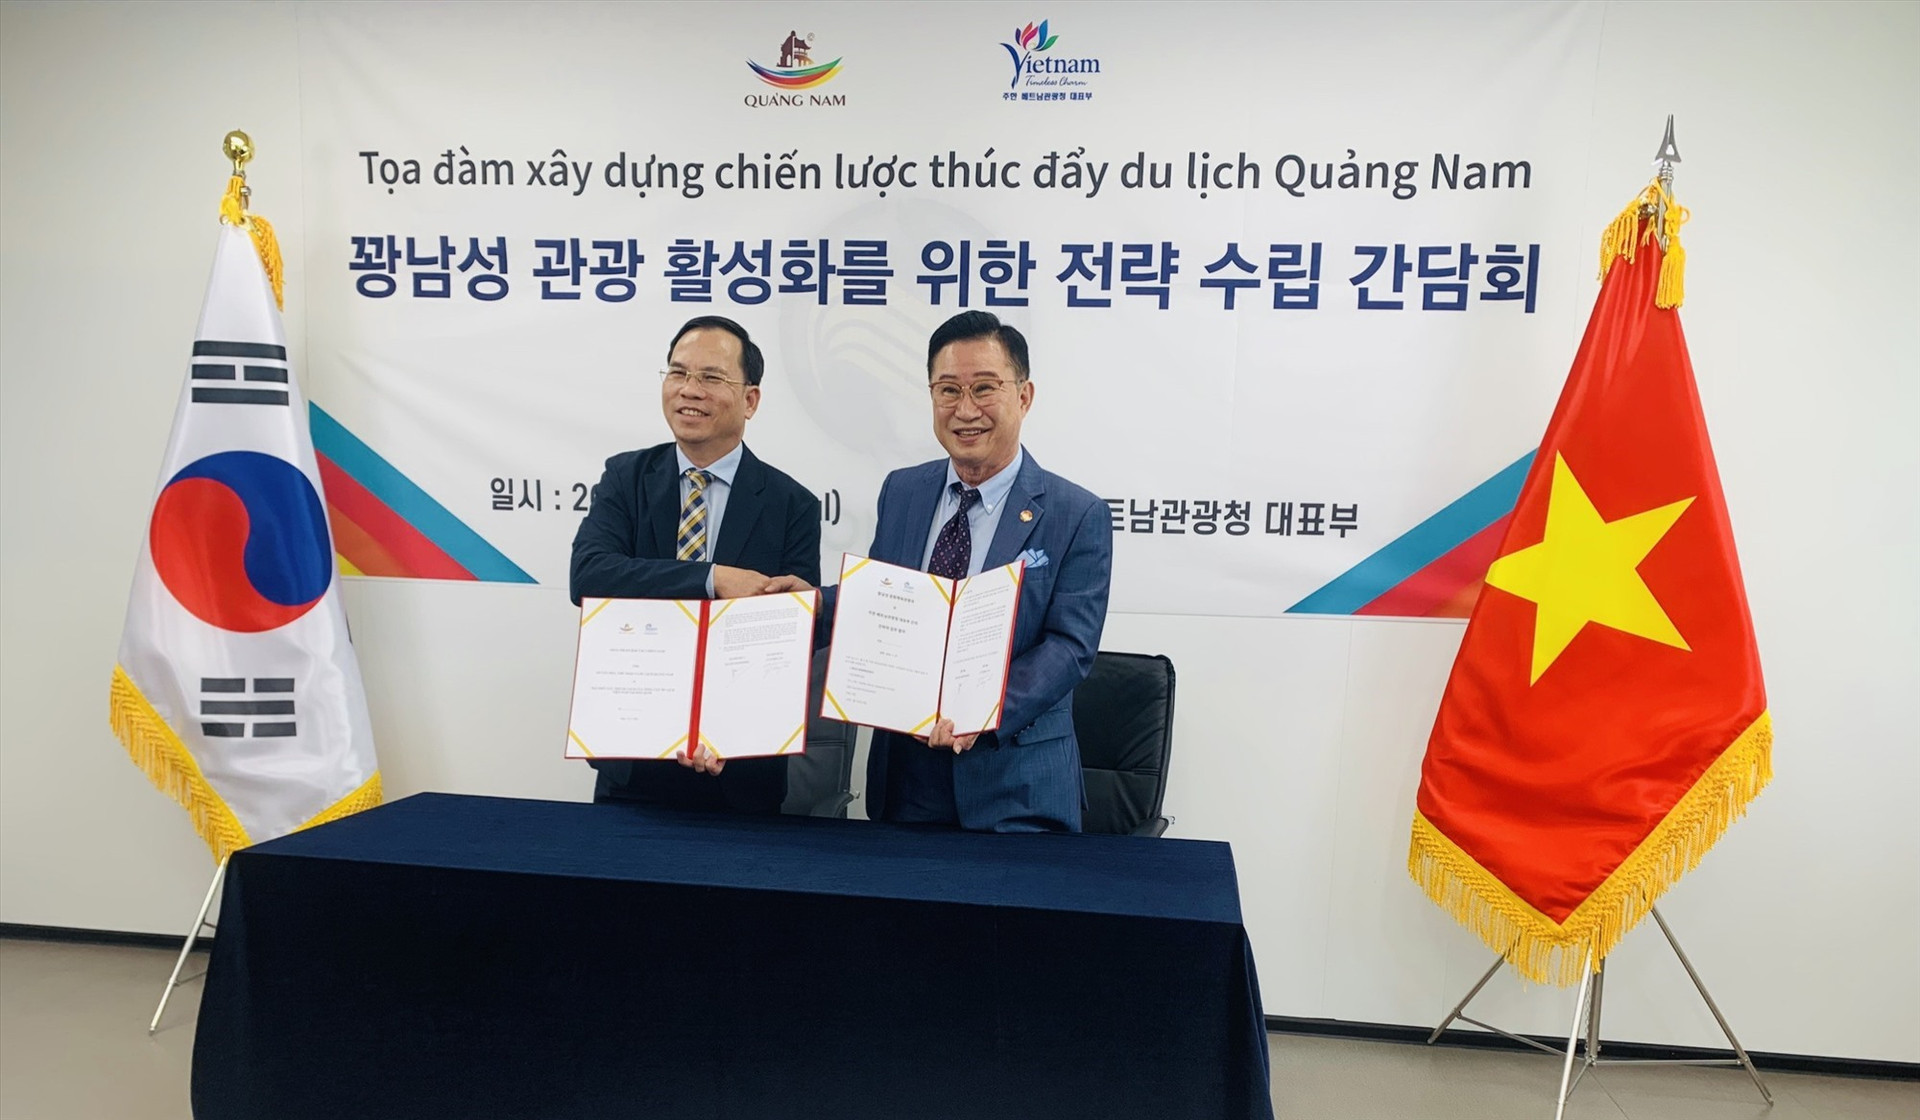 Ký kết hợp tác chiến lược phát triển du lịch Quảng Nam tại Hàn Quốc